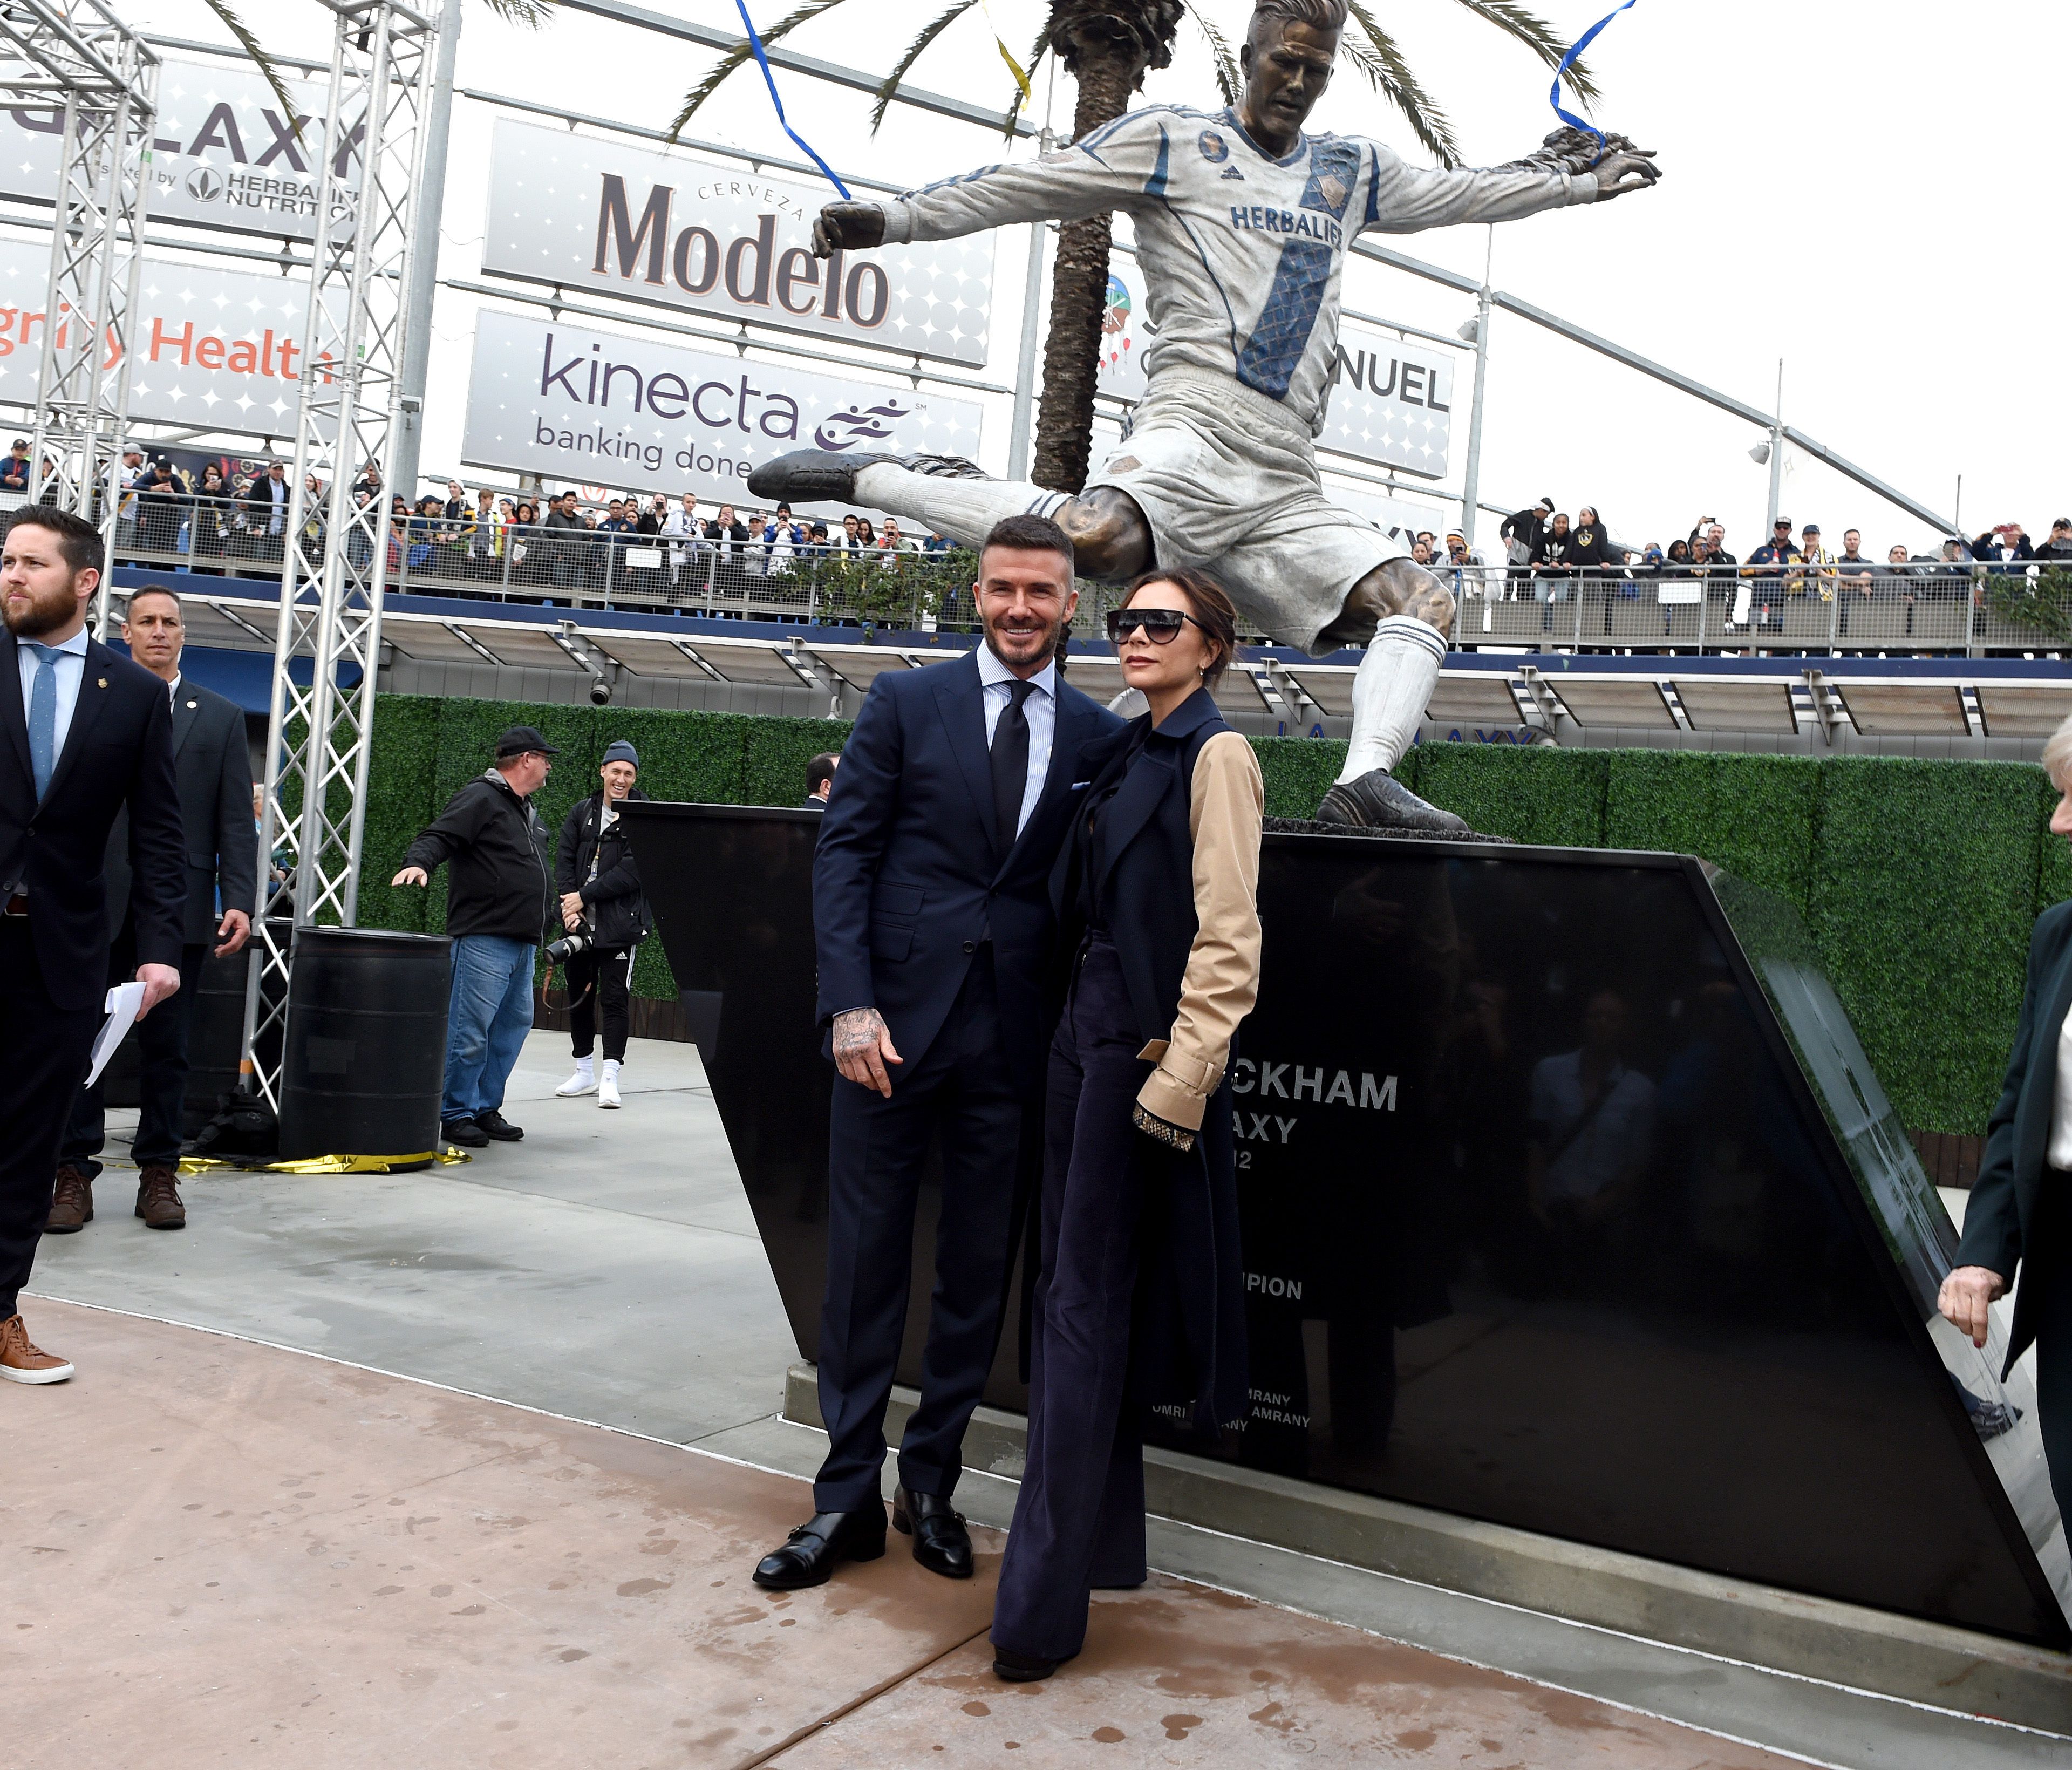 David Beckham a sa statue devant le stade du LA Galaxy